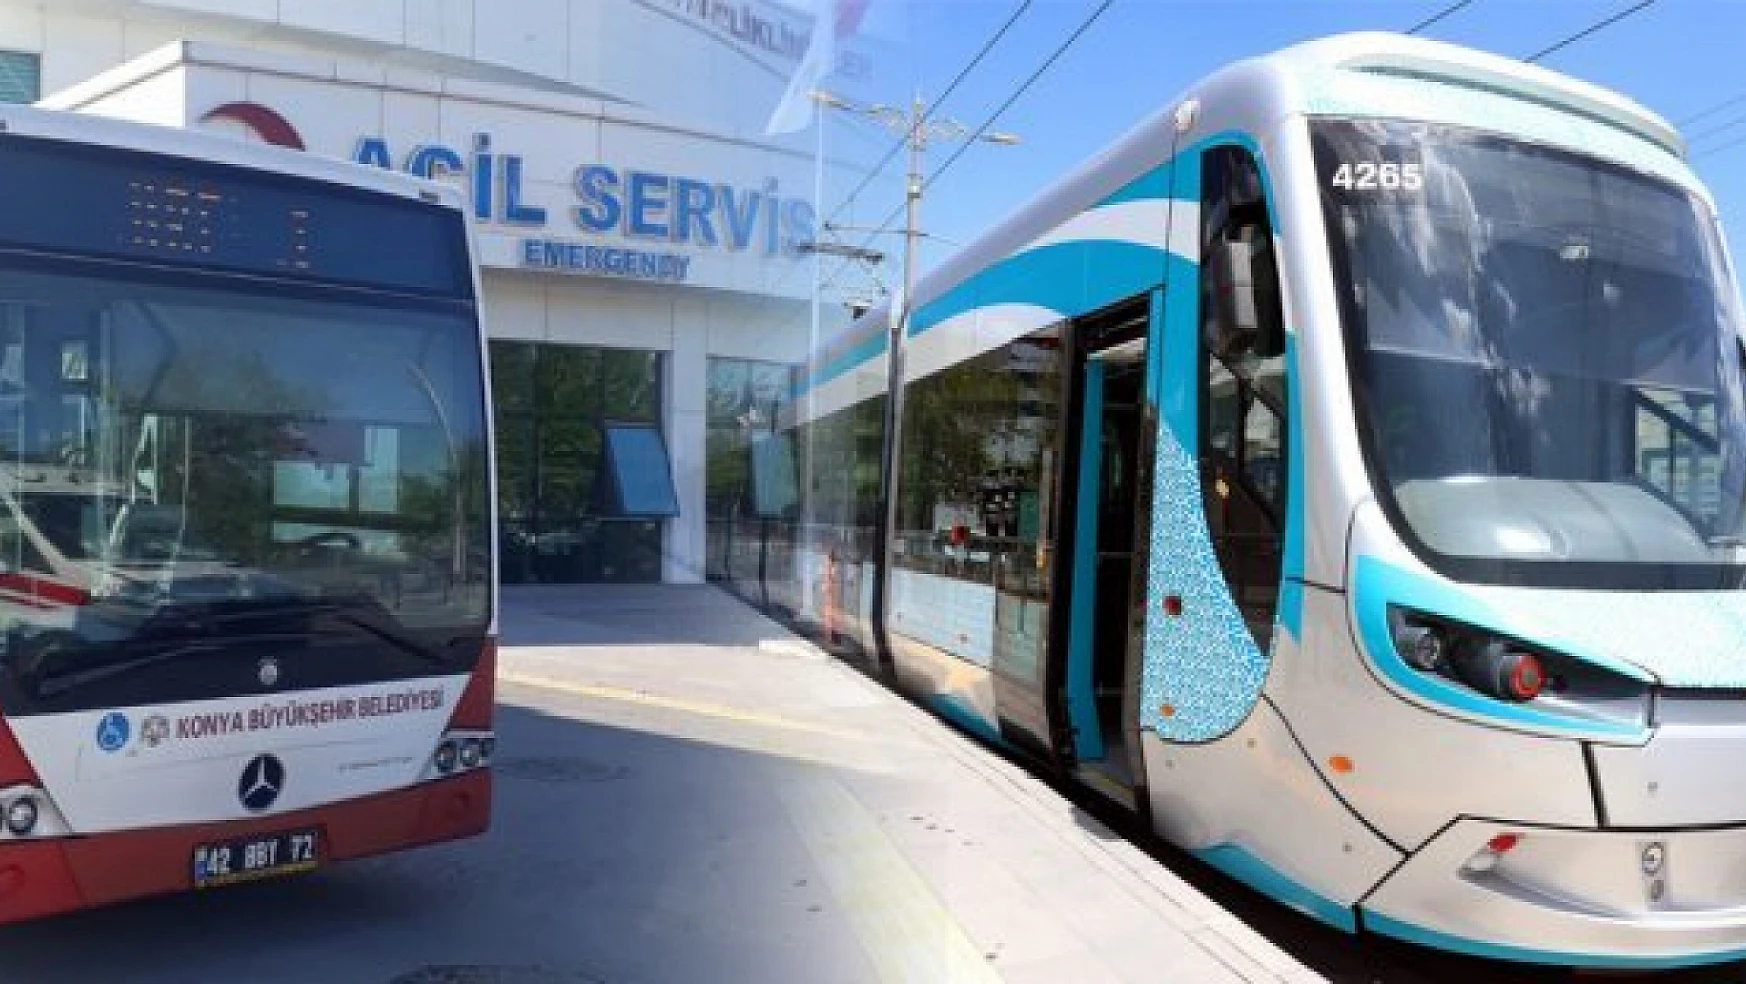 Konya Büyükşehir Belediyesi'nin toplu ulaşım araçları LGS sınavına gireceklere ücretsiz olacak